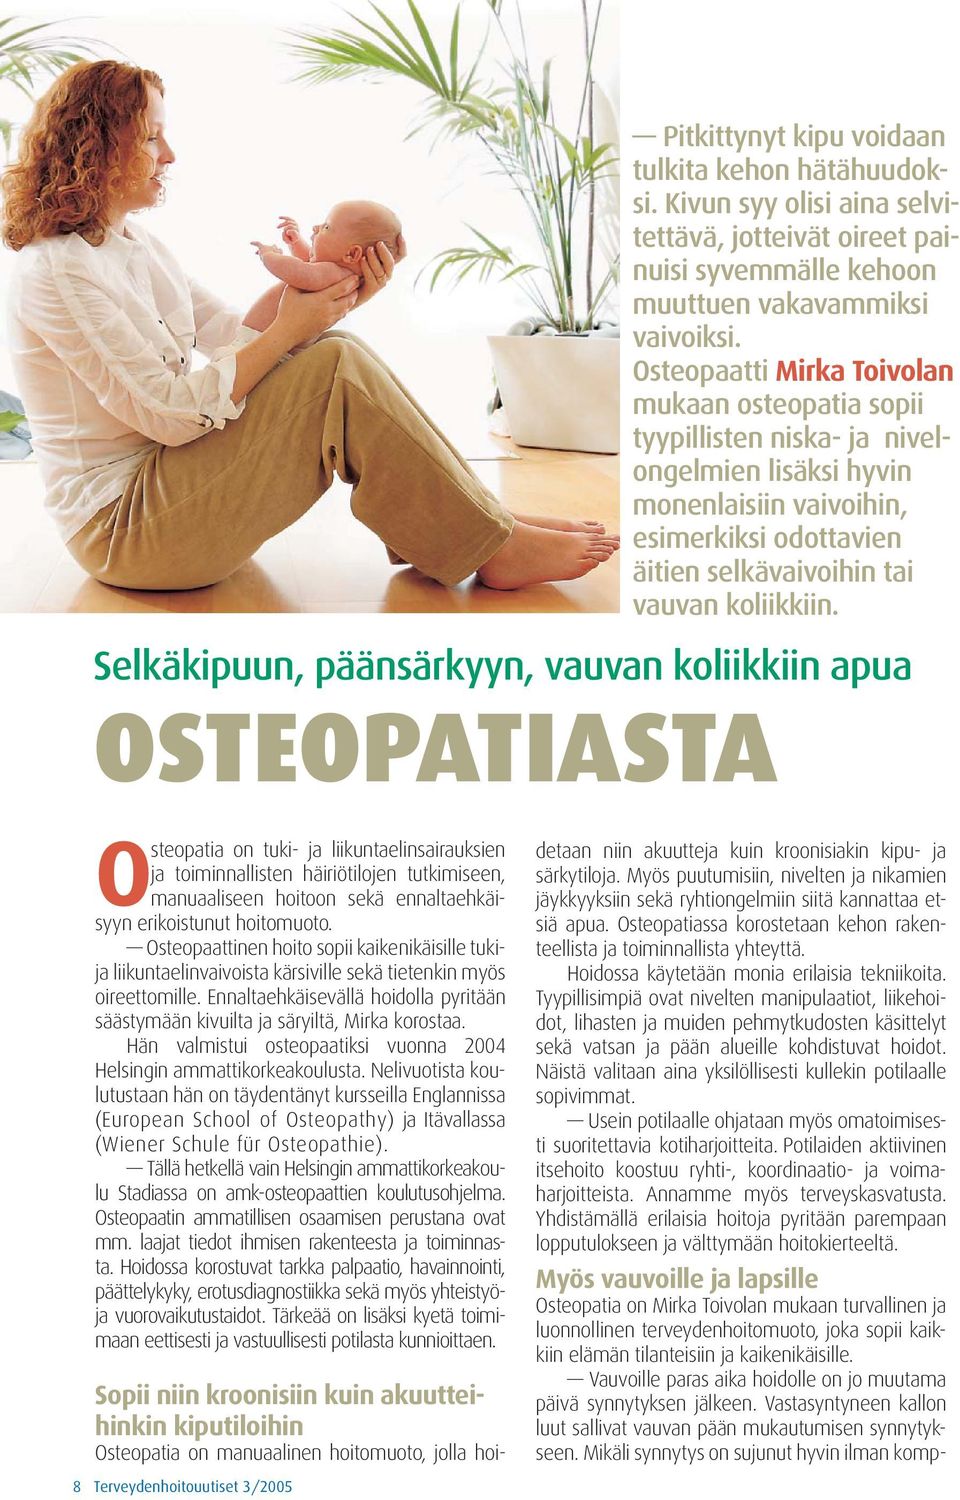 Selkäkipuun, päänsärkyyn, vauvan koliikkiin apua OSTEOPATIASTA Osteopatia on tuki- ja liikuntaelinsairauksien ja toiminnallisten häiriötilojen tutkimiseen, manuaaliseen hoitoon sekä ennaltaehkäisyyn